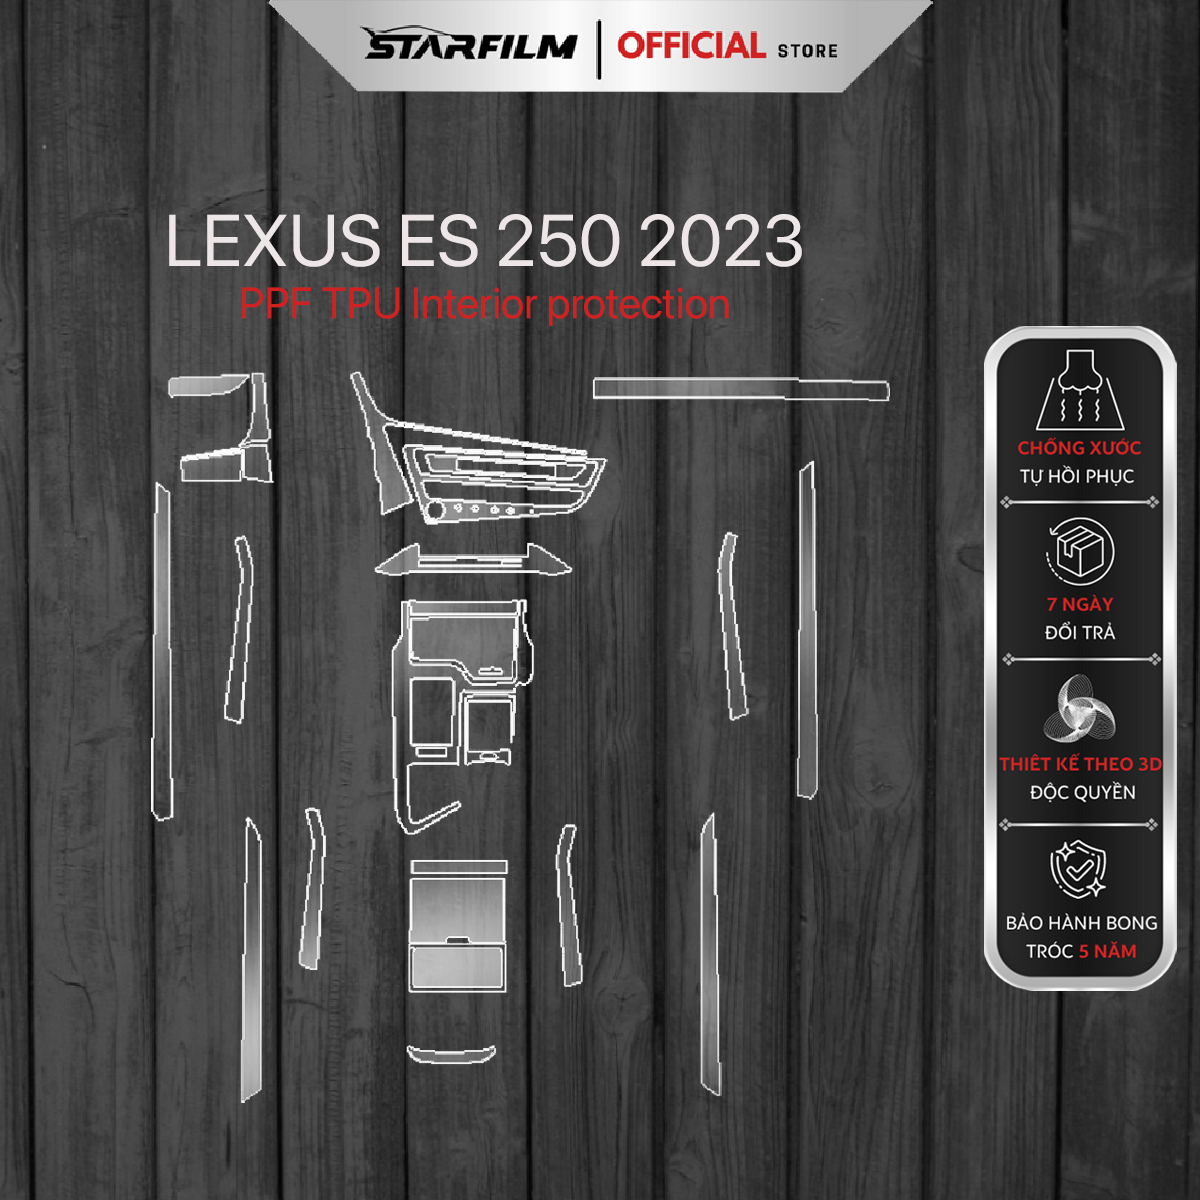 Lexus ES 250 2023 PPF TPU nội thất chống xước tự hồi phục